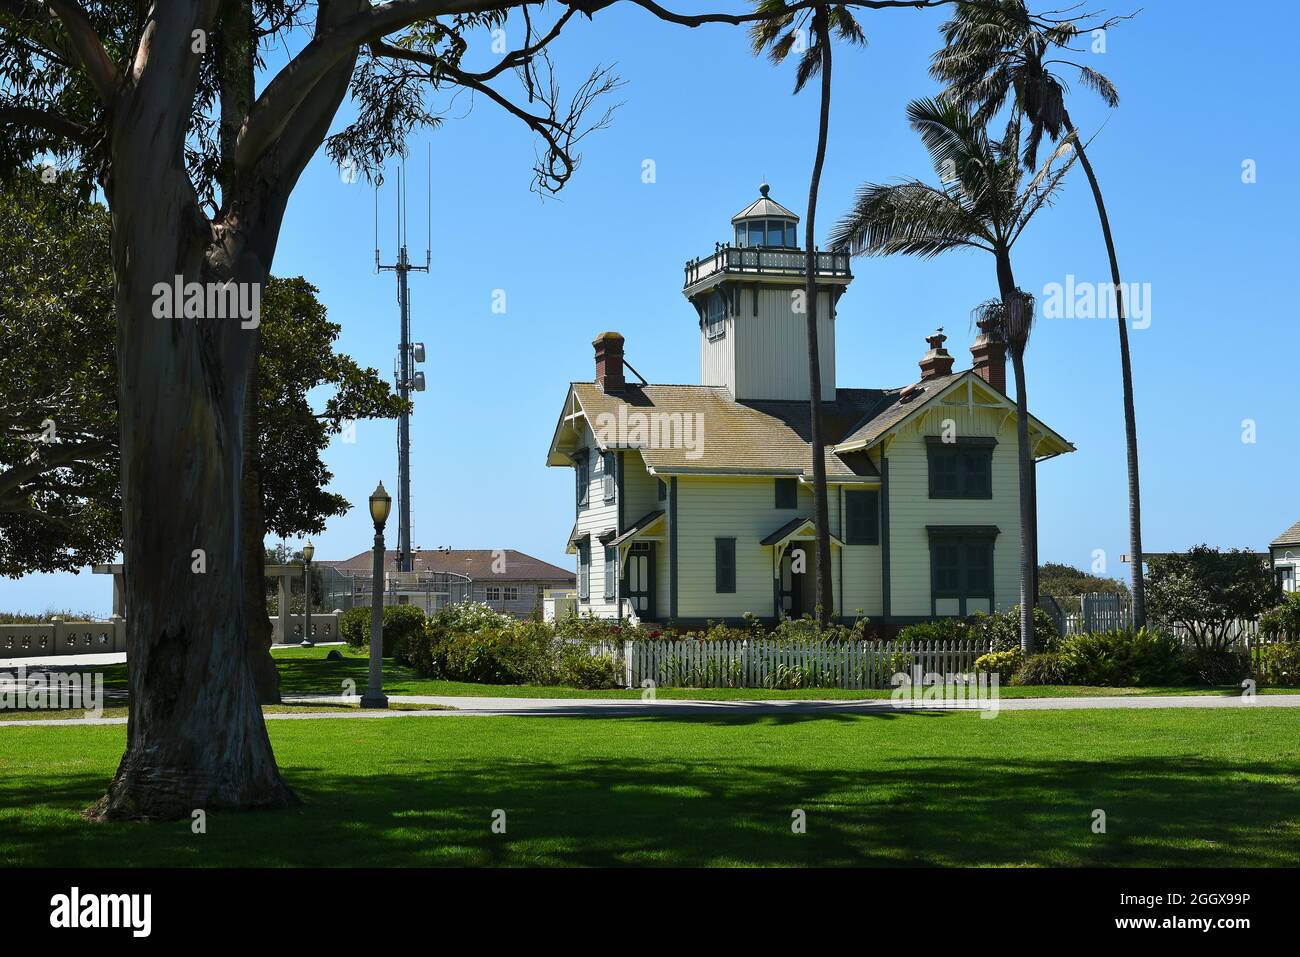 SAN PEDRO, CALIFORNIE - 27 AOÛT 2021 : le phare de point Fermin, entouré d'arbres, est inscrit au registre national des lieux historiques. Banque D'Images